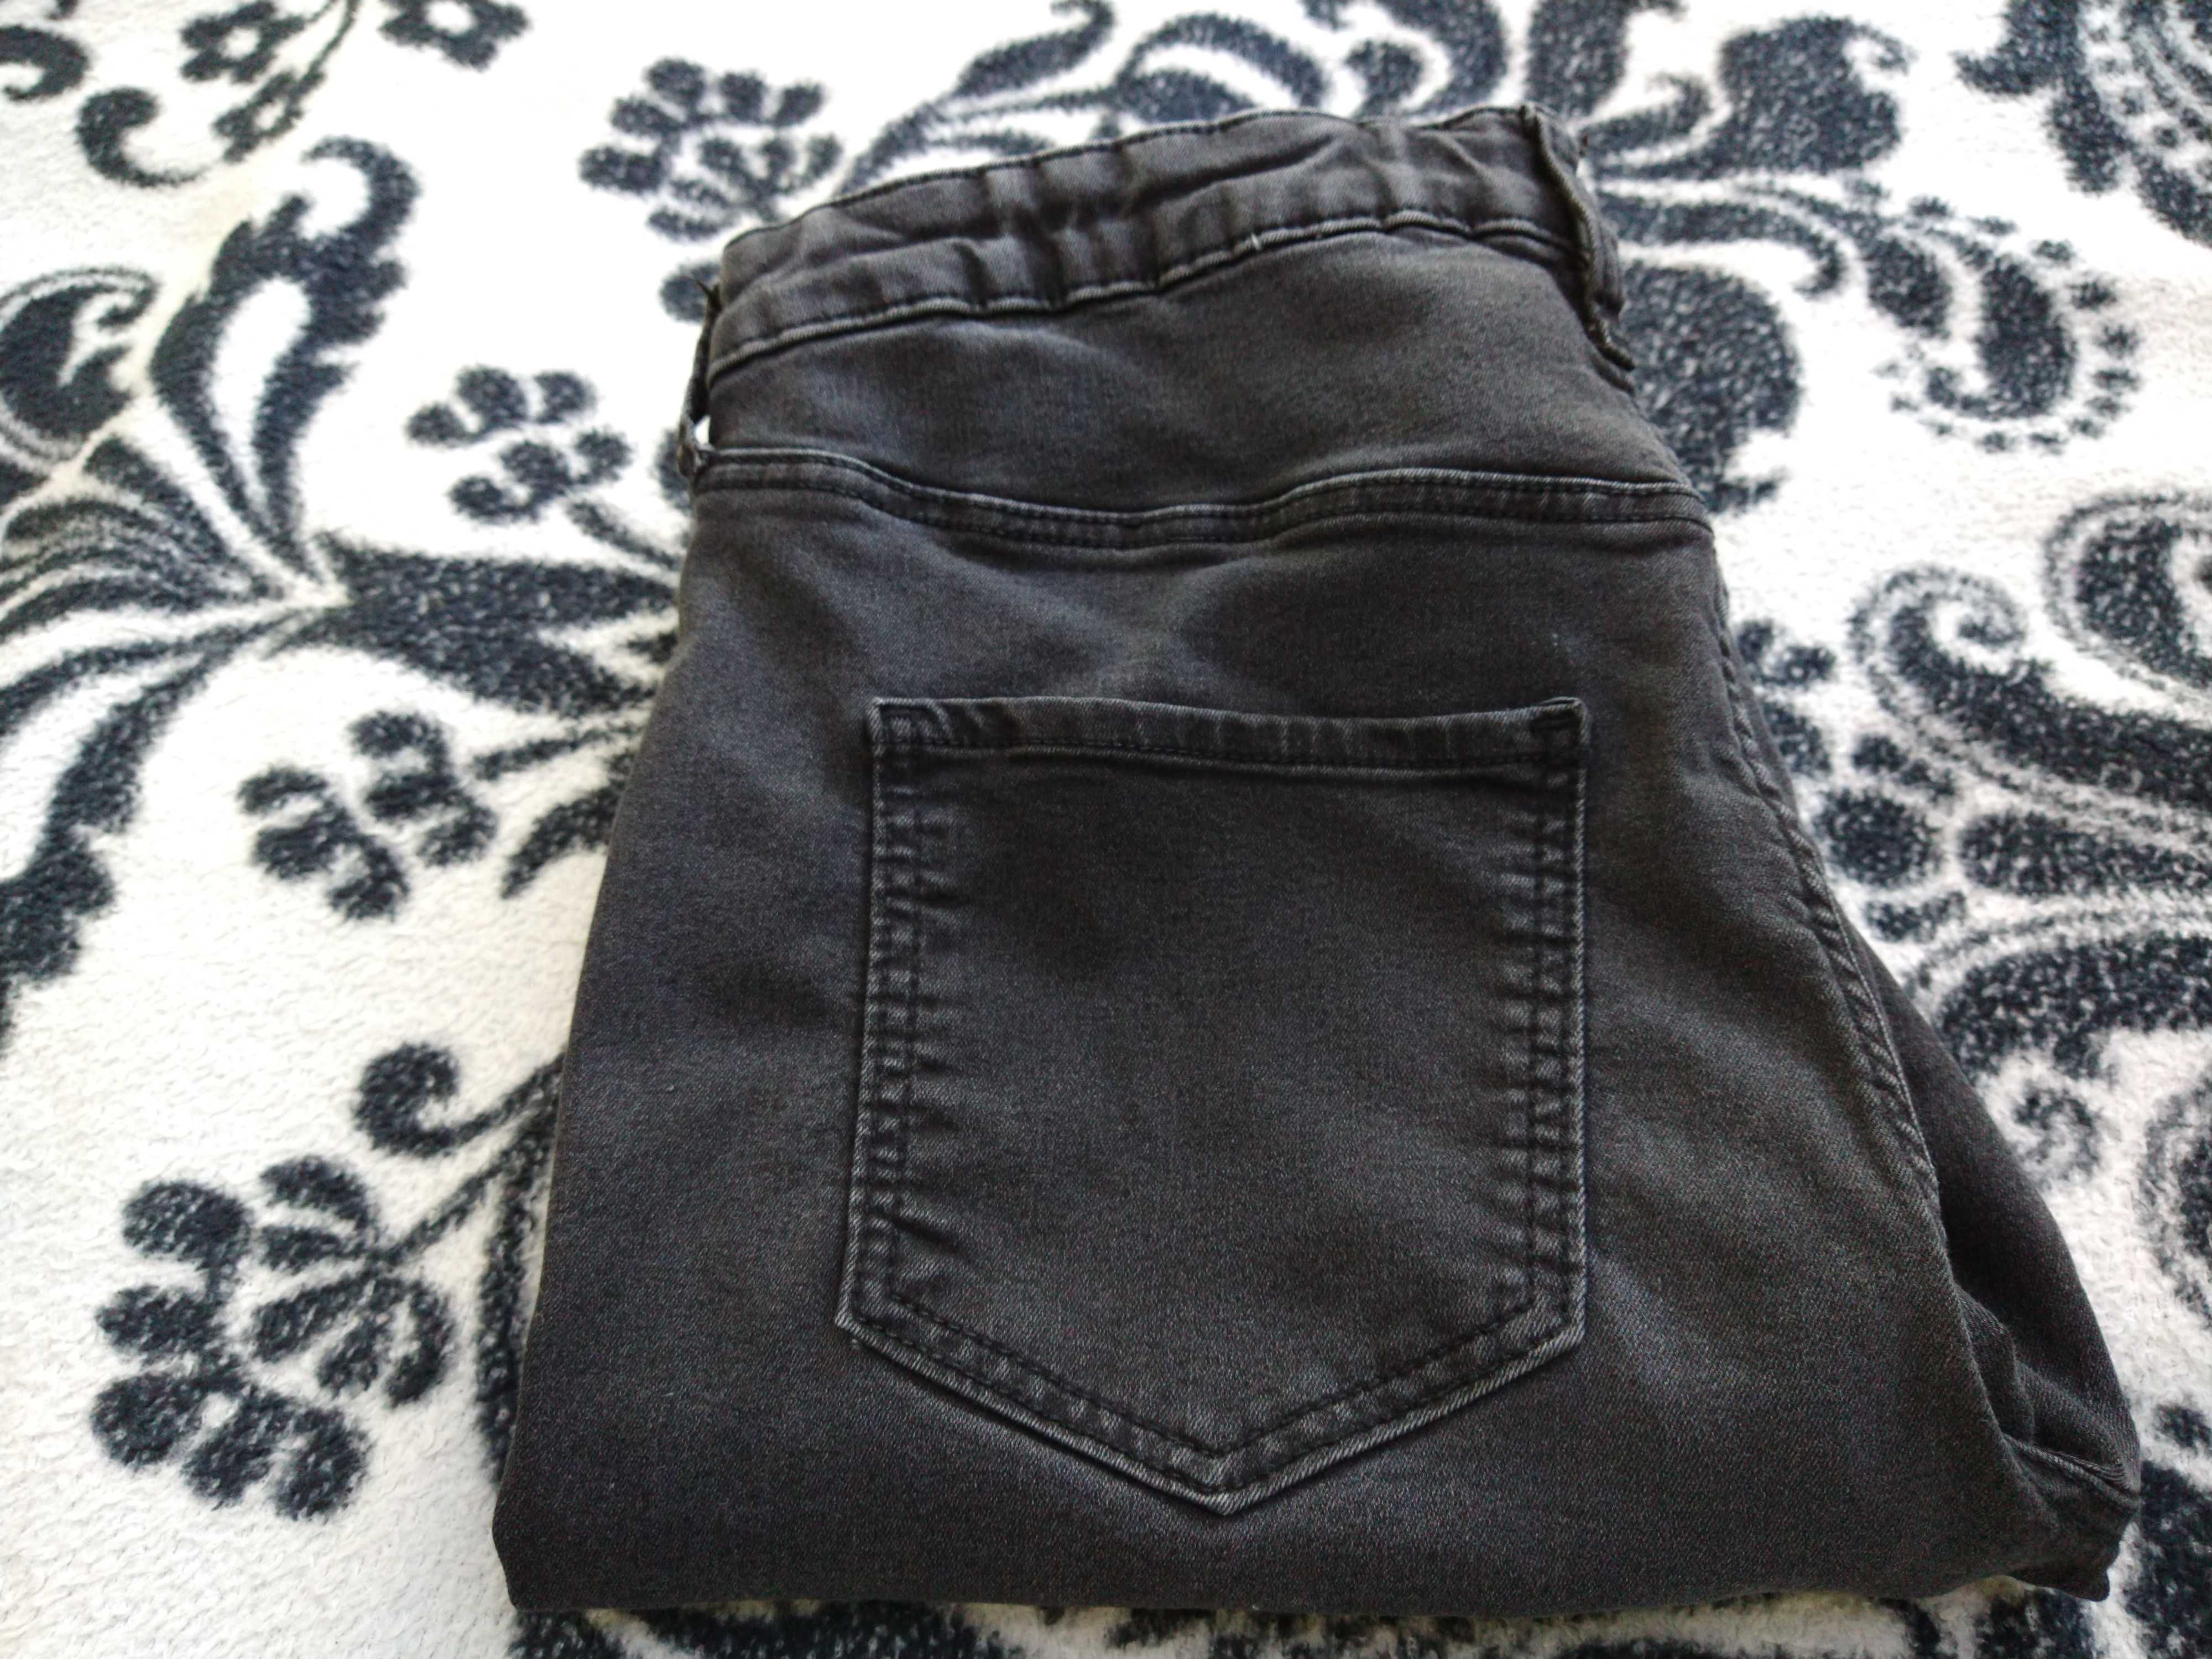 Dżinsy Skinny Fit H&M, rozmiar 162 - 170 cm, zestaw 3 sztuki